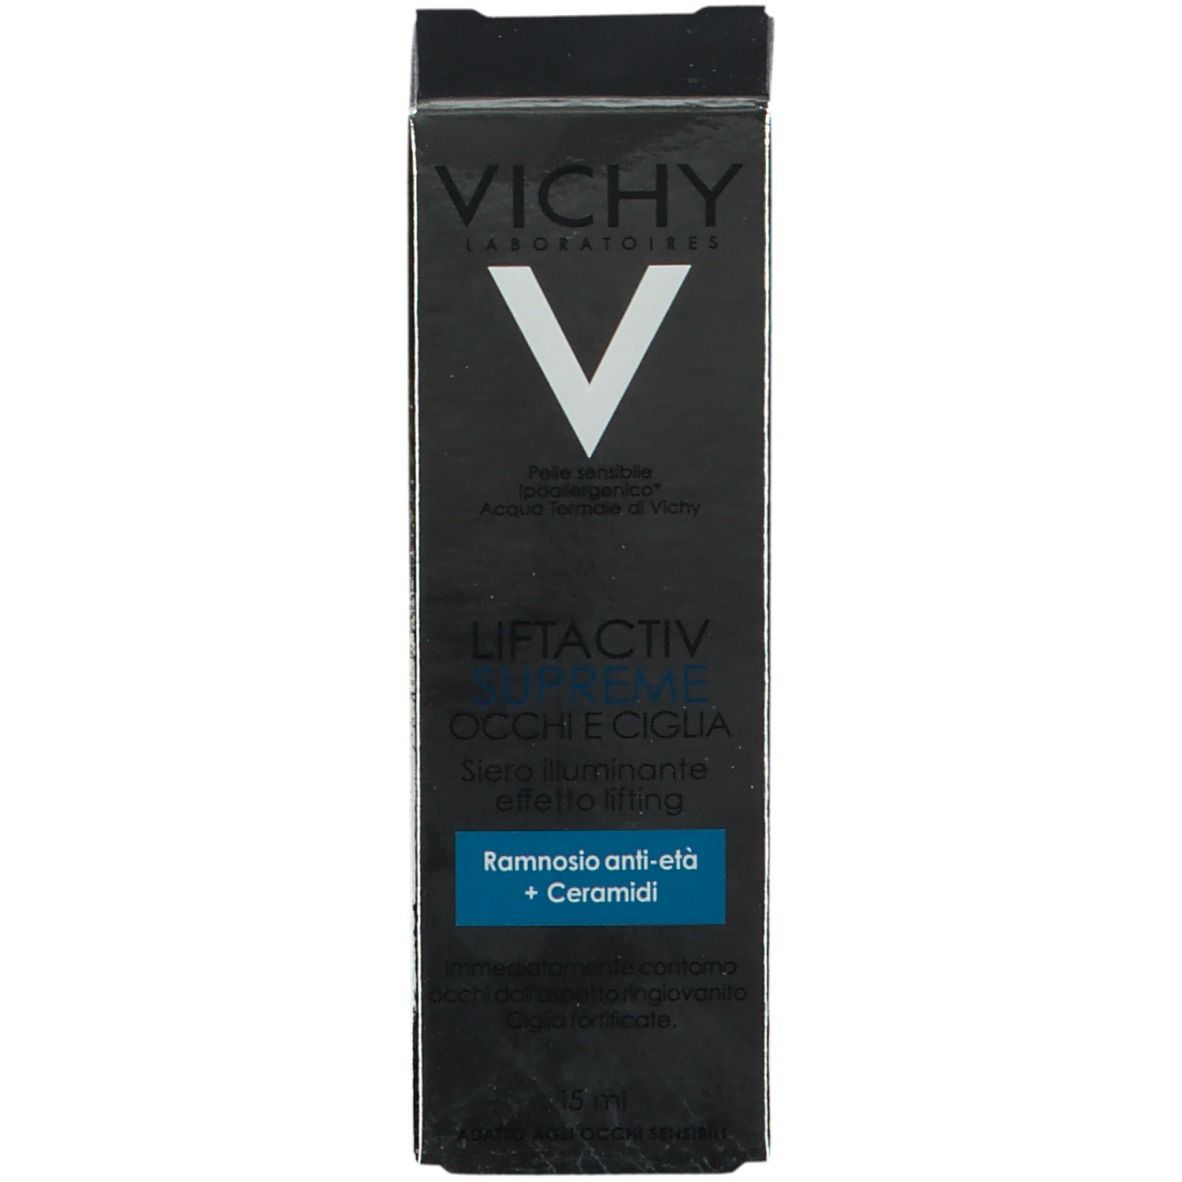 Vichy Liftactiv Siero Occhi e ciglia fortificante 15 ml